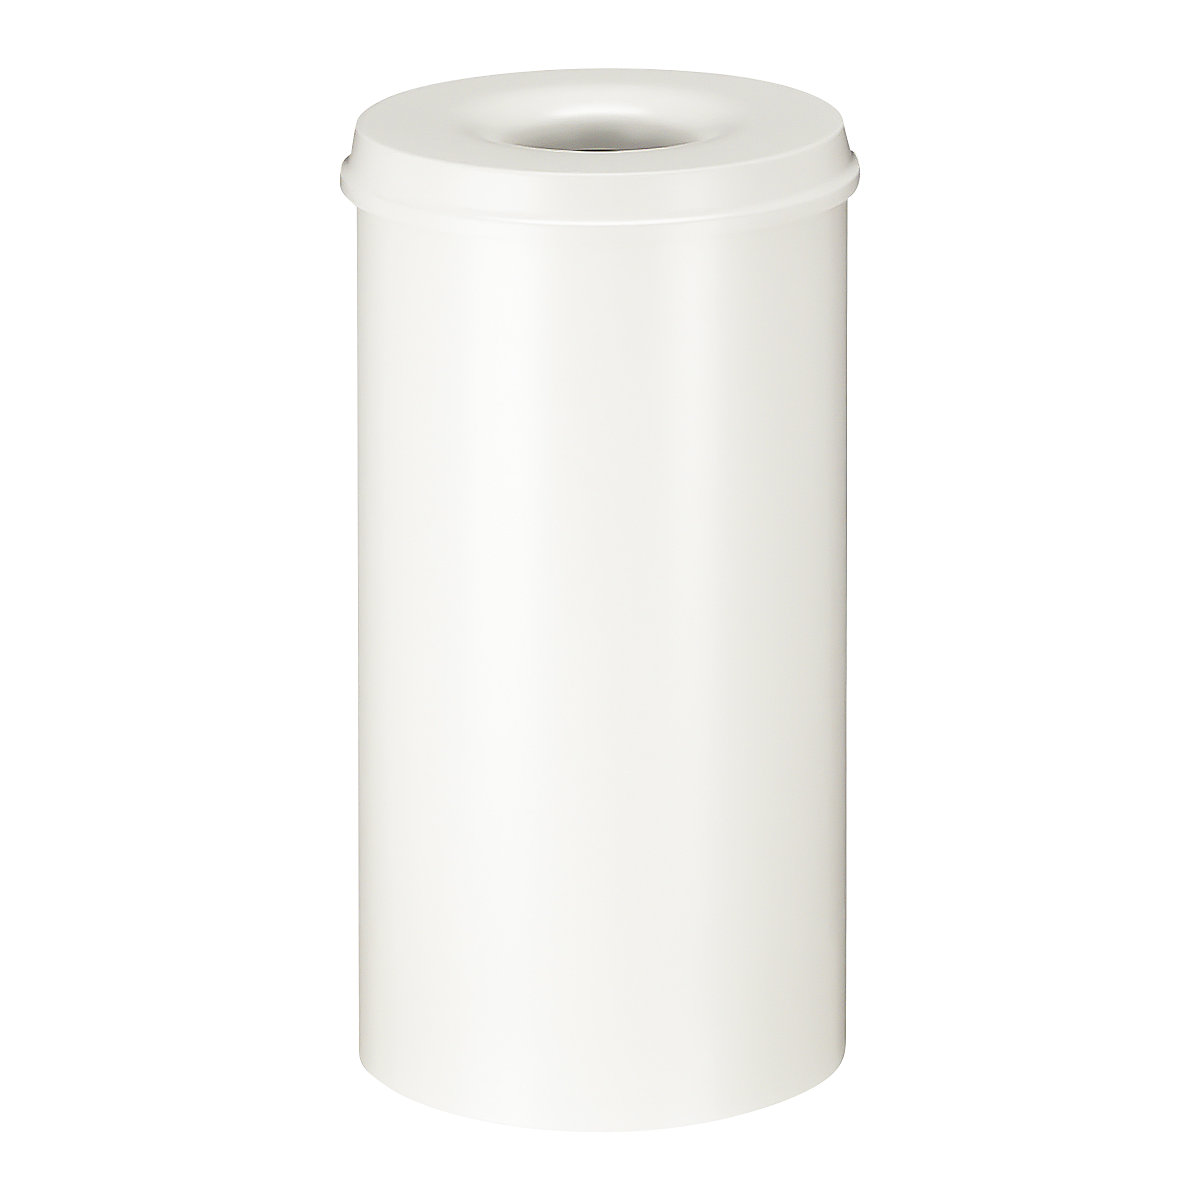 Corbeille à papier auto-extinguible, capacité 50 l, h x Ø 625 x 335 mm, corps blanc / étouffoir blanc